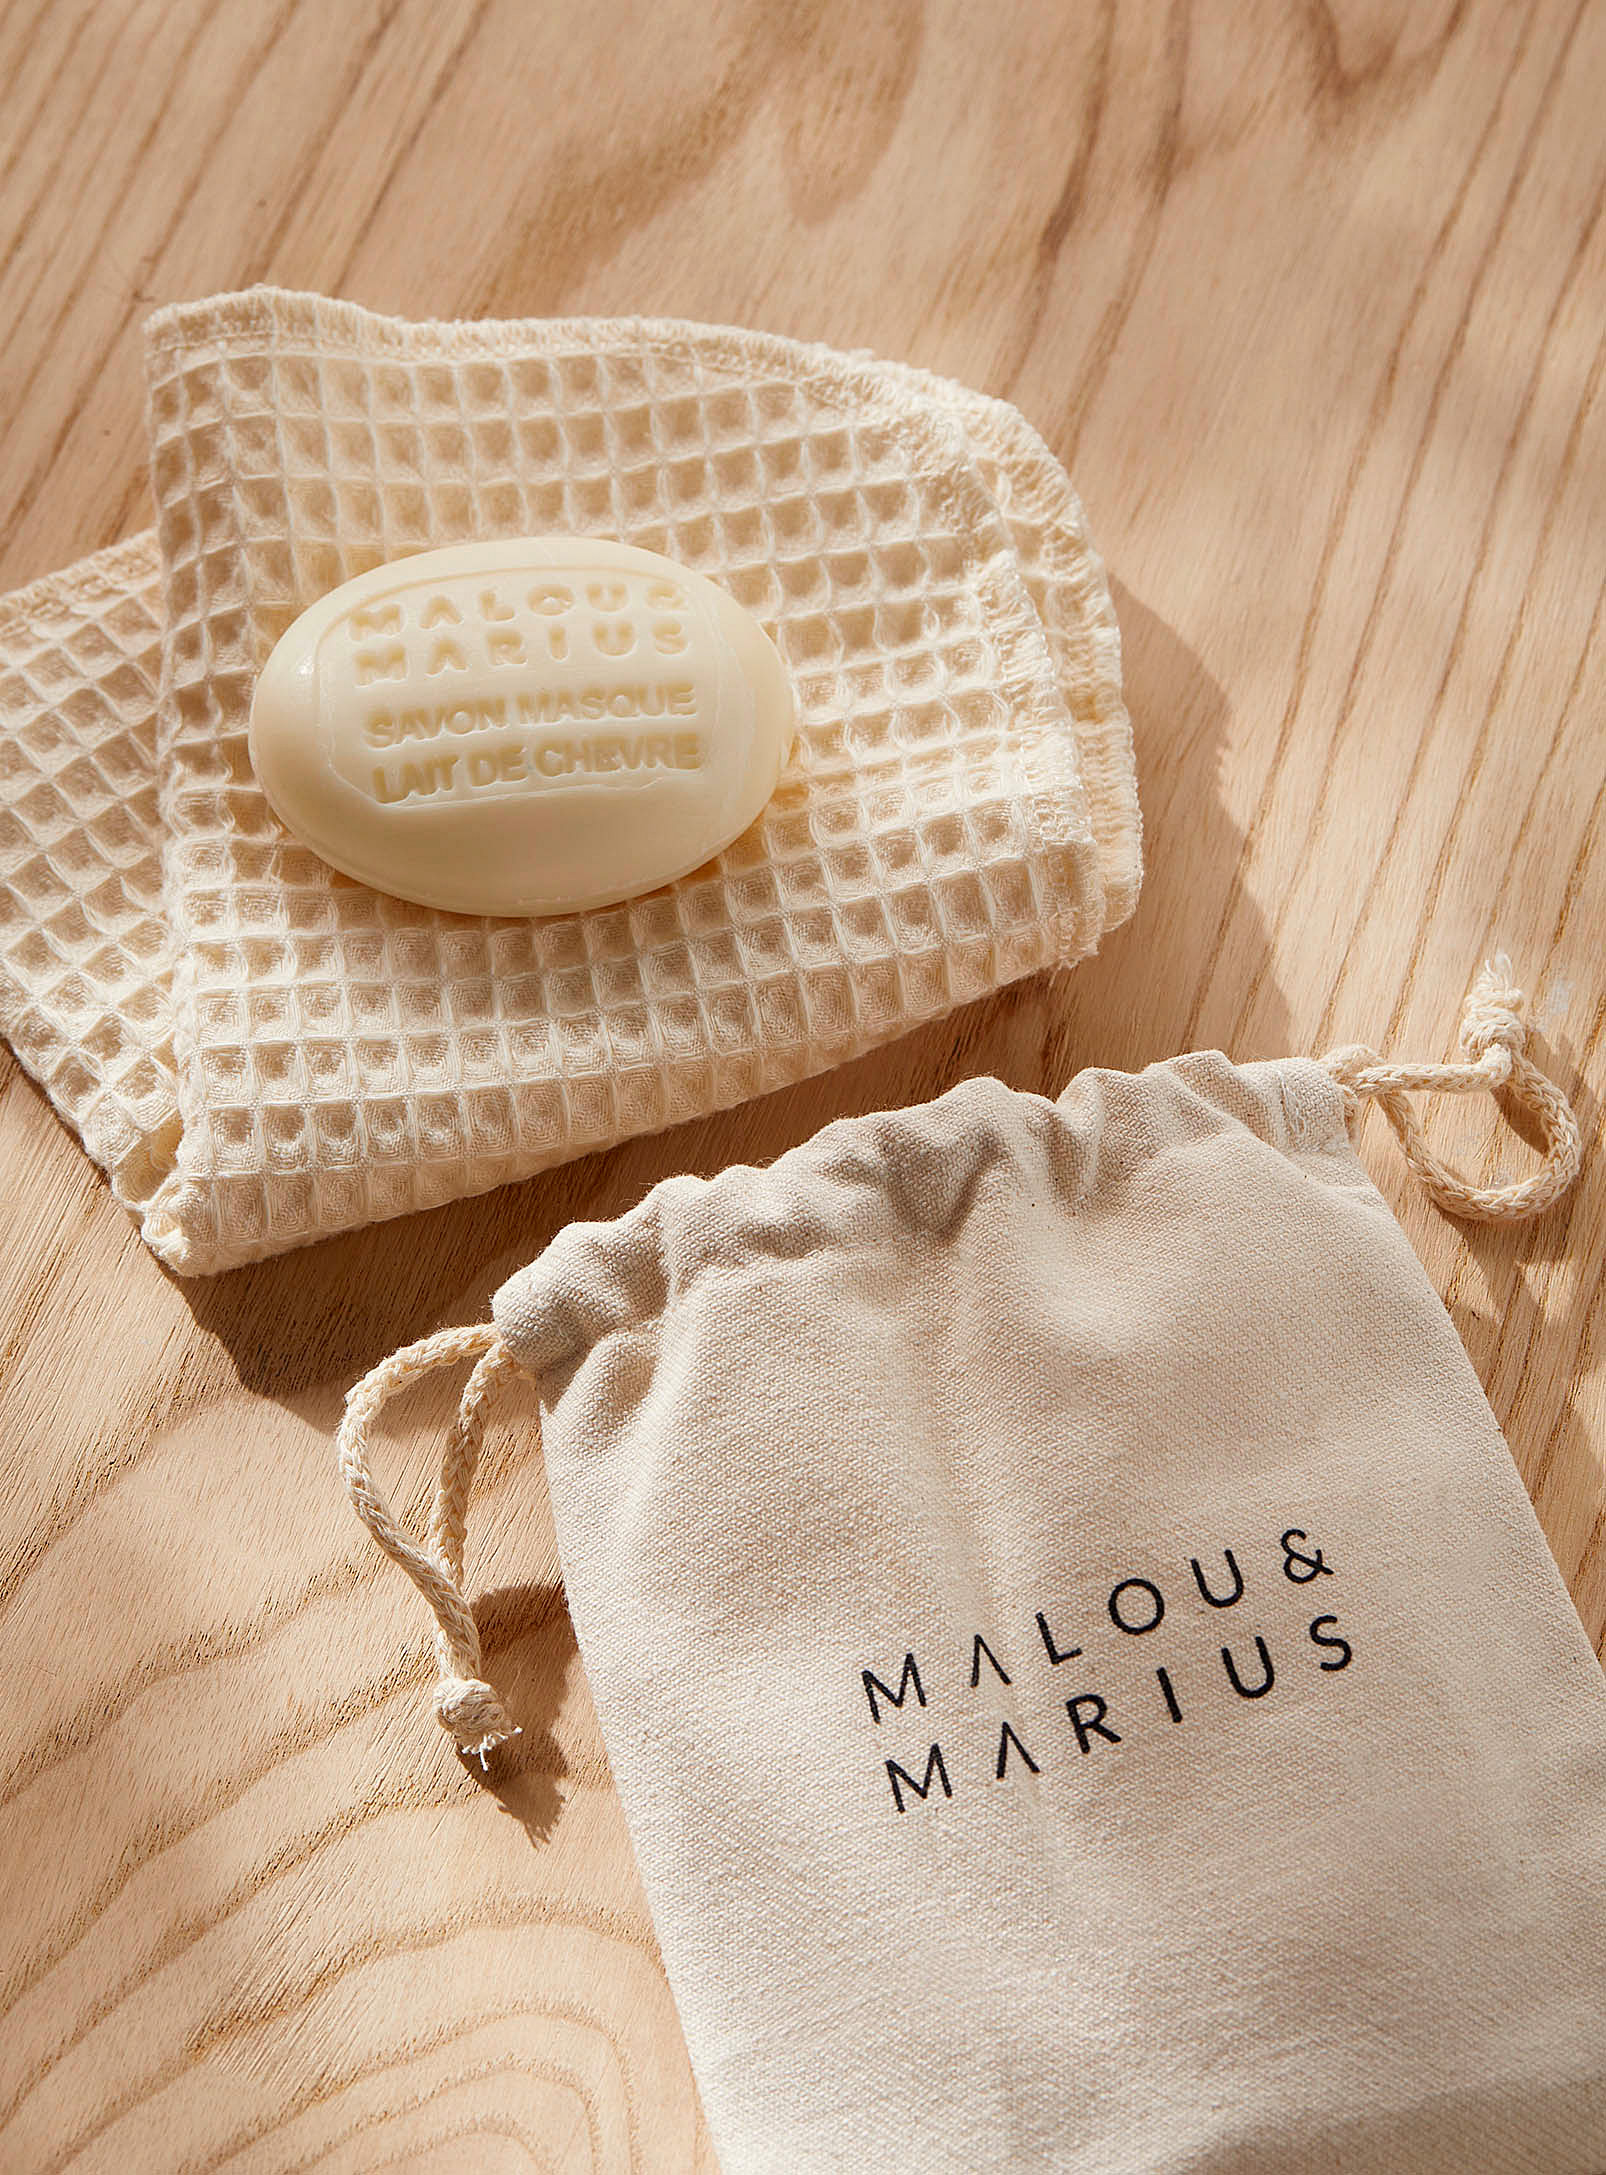 Malou & Marius - L'ensemble savon masque et serviette pour le visage